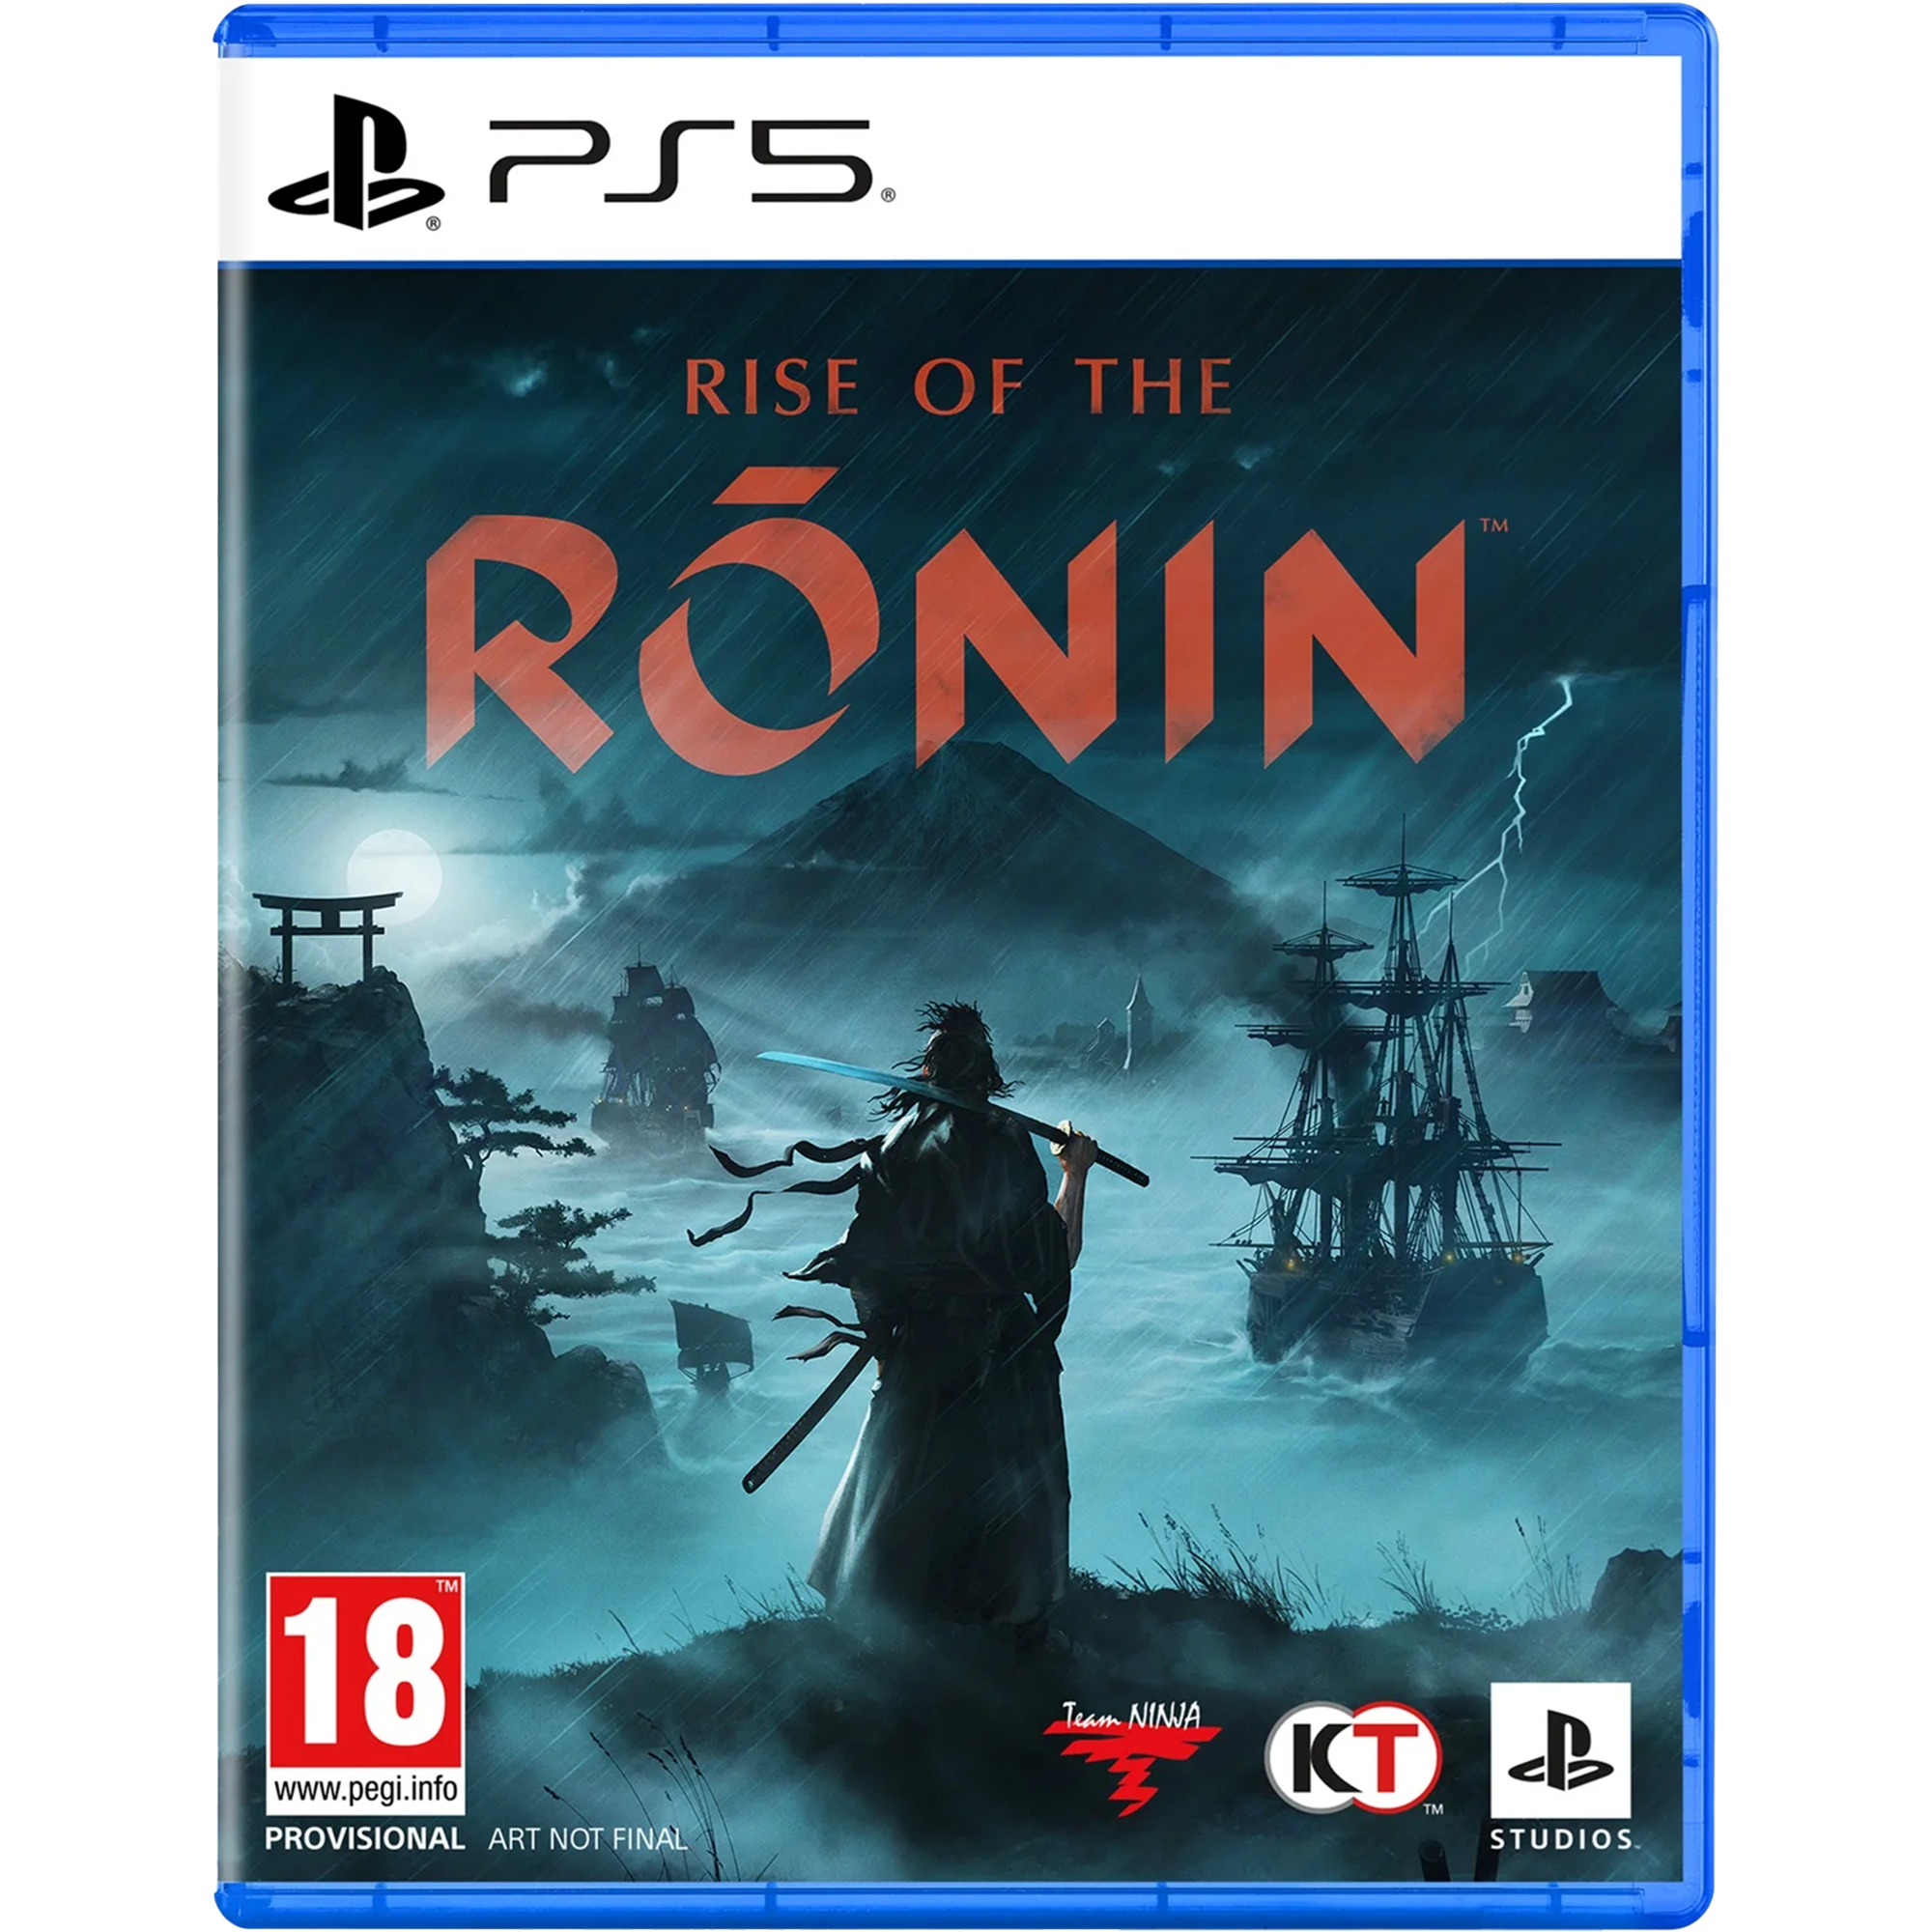 משחק Rise of the Ronin לקונסולת Sony PlayStation 5